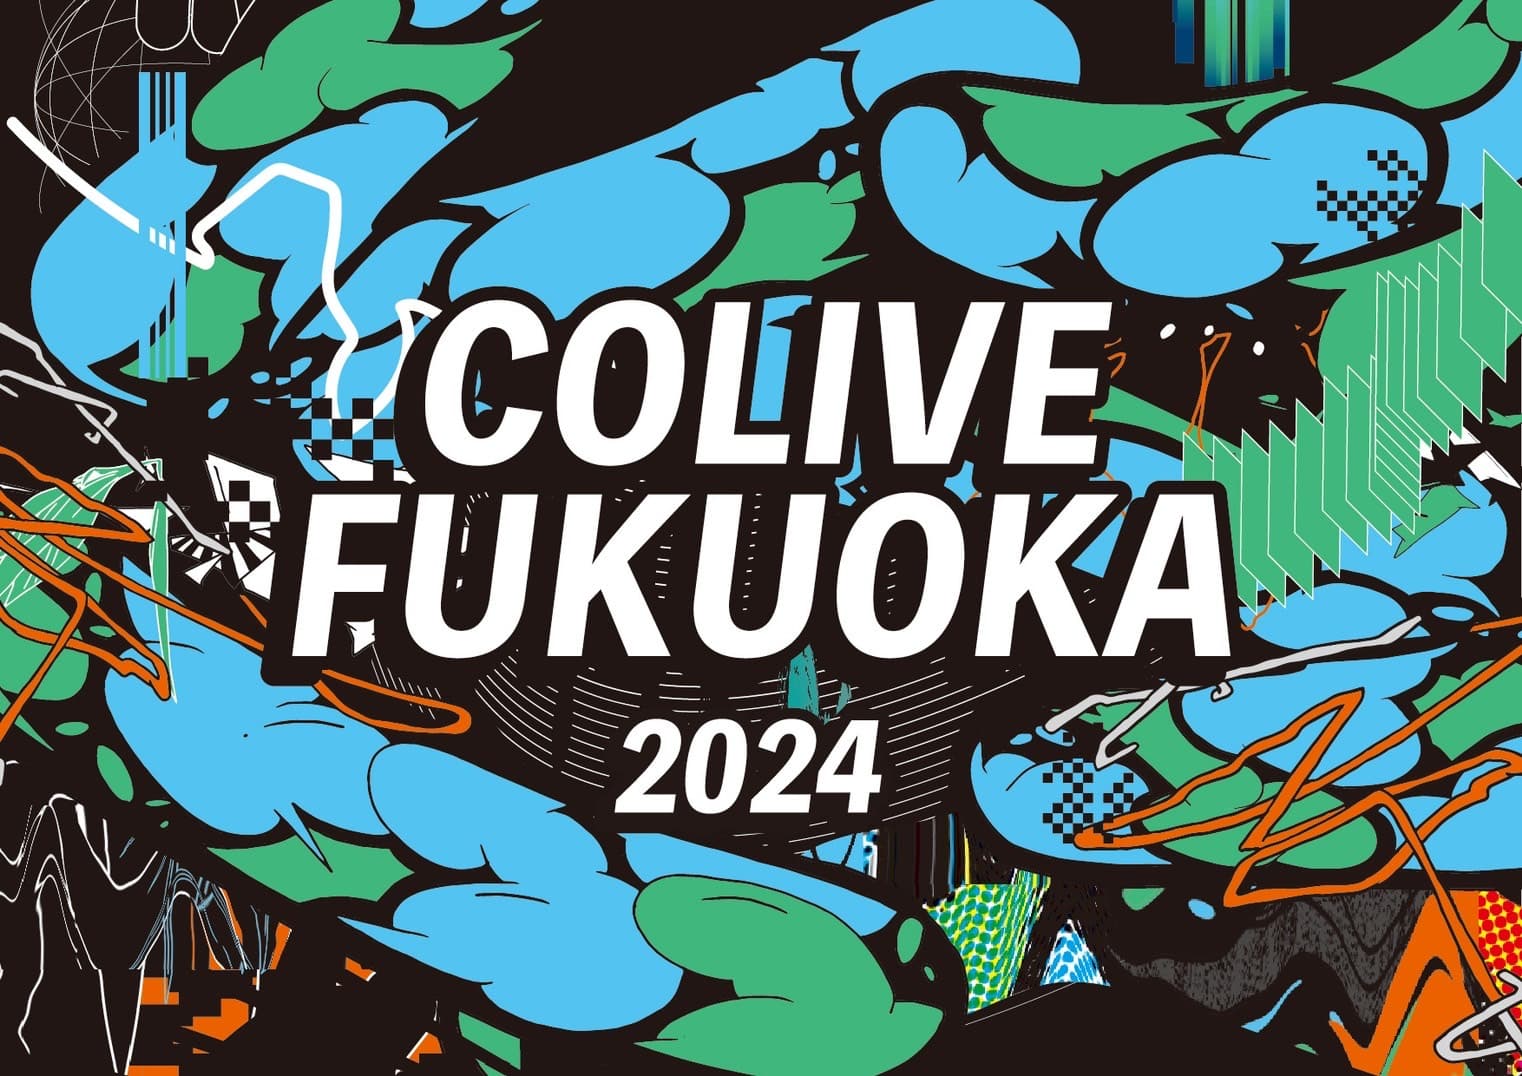 Colive Fukuoka